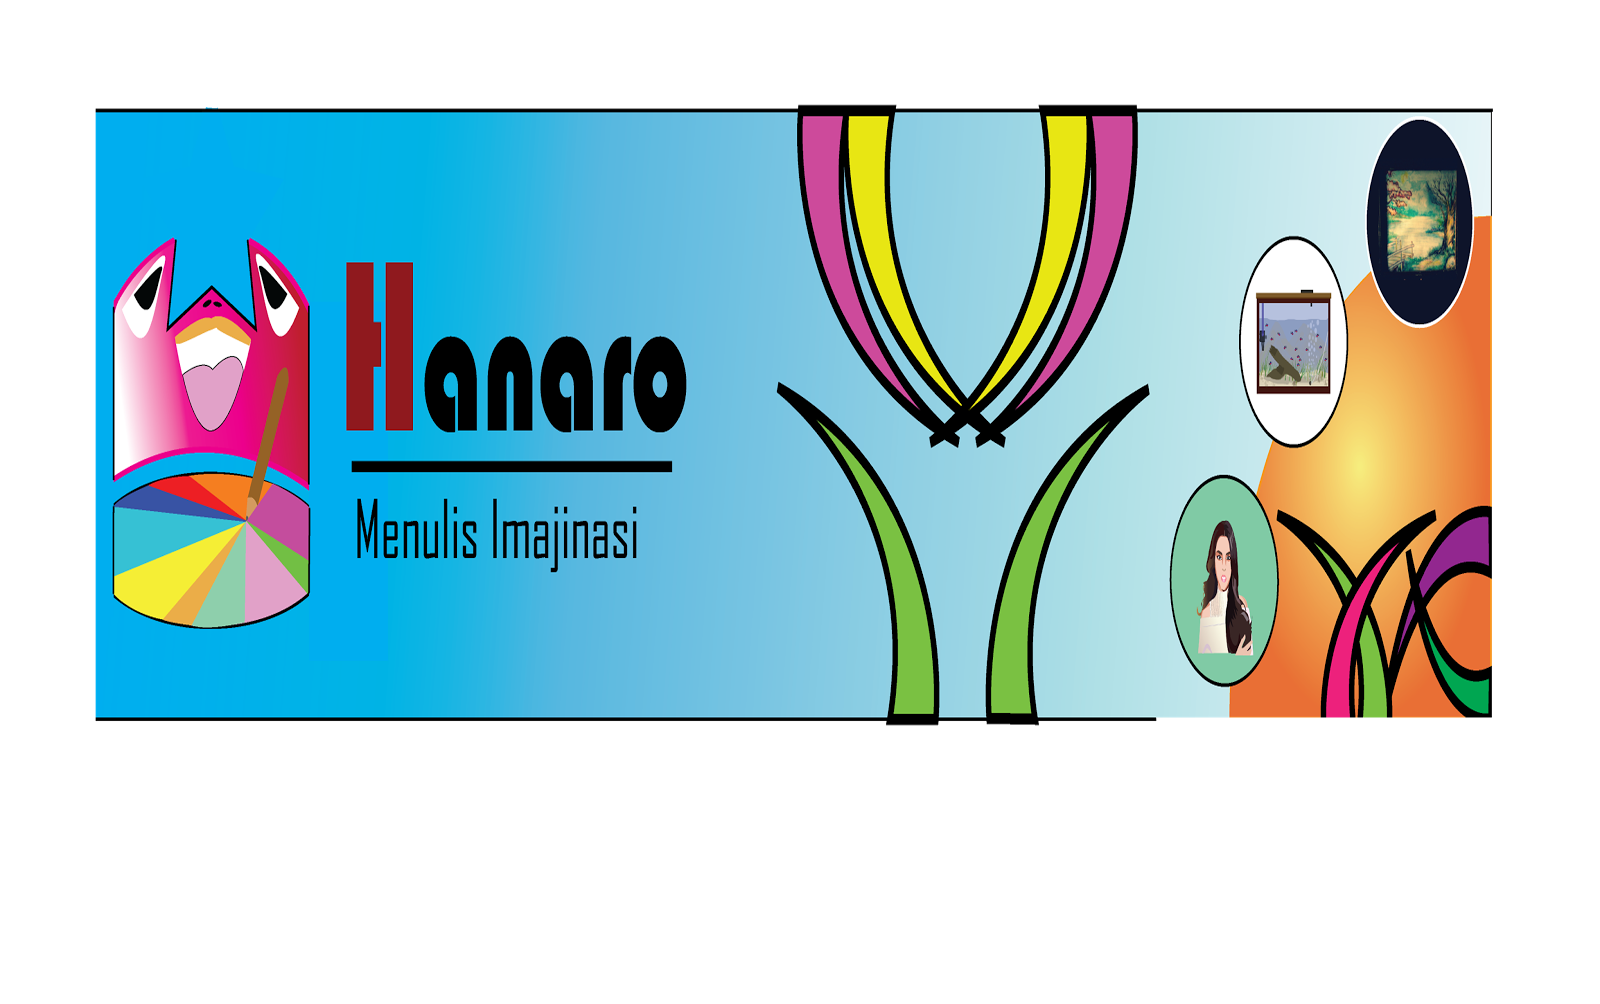 Hanaro.com